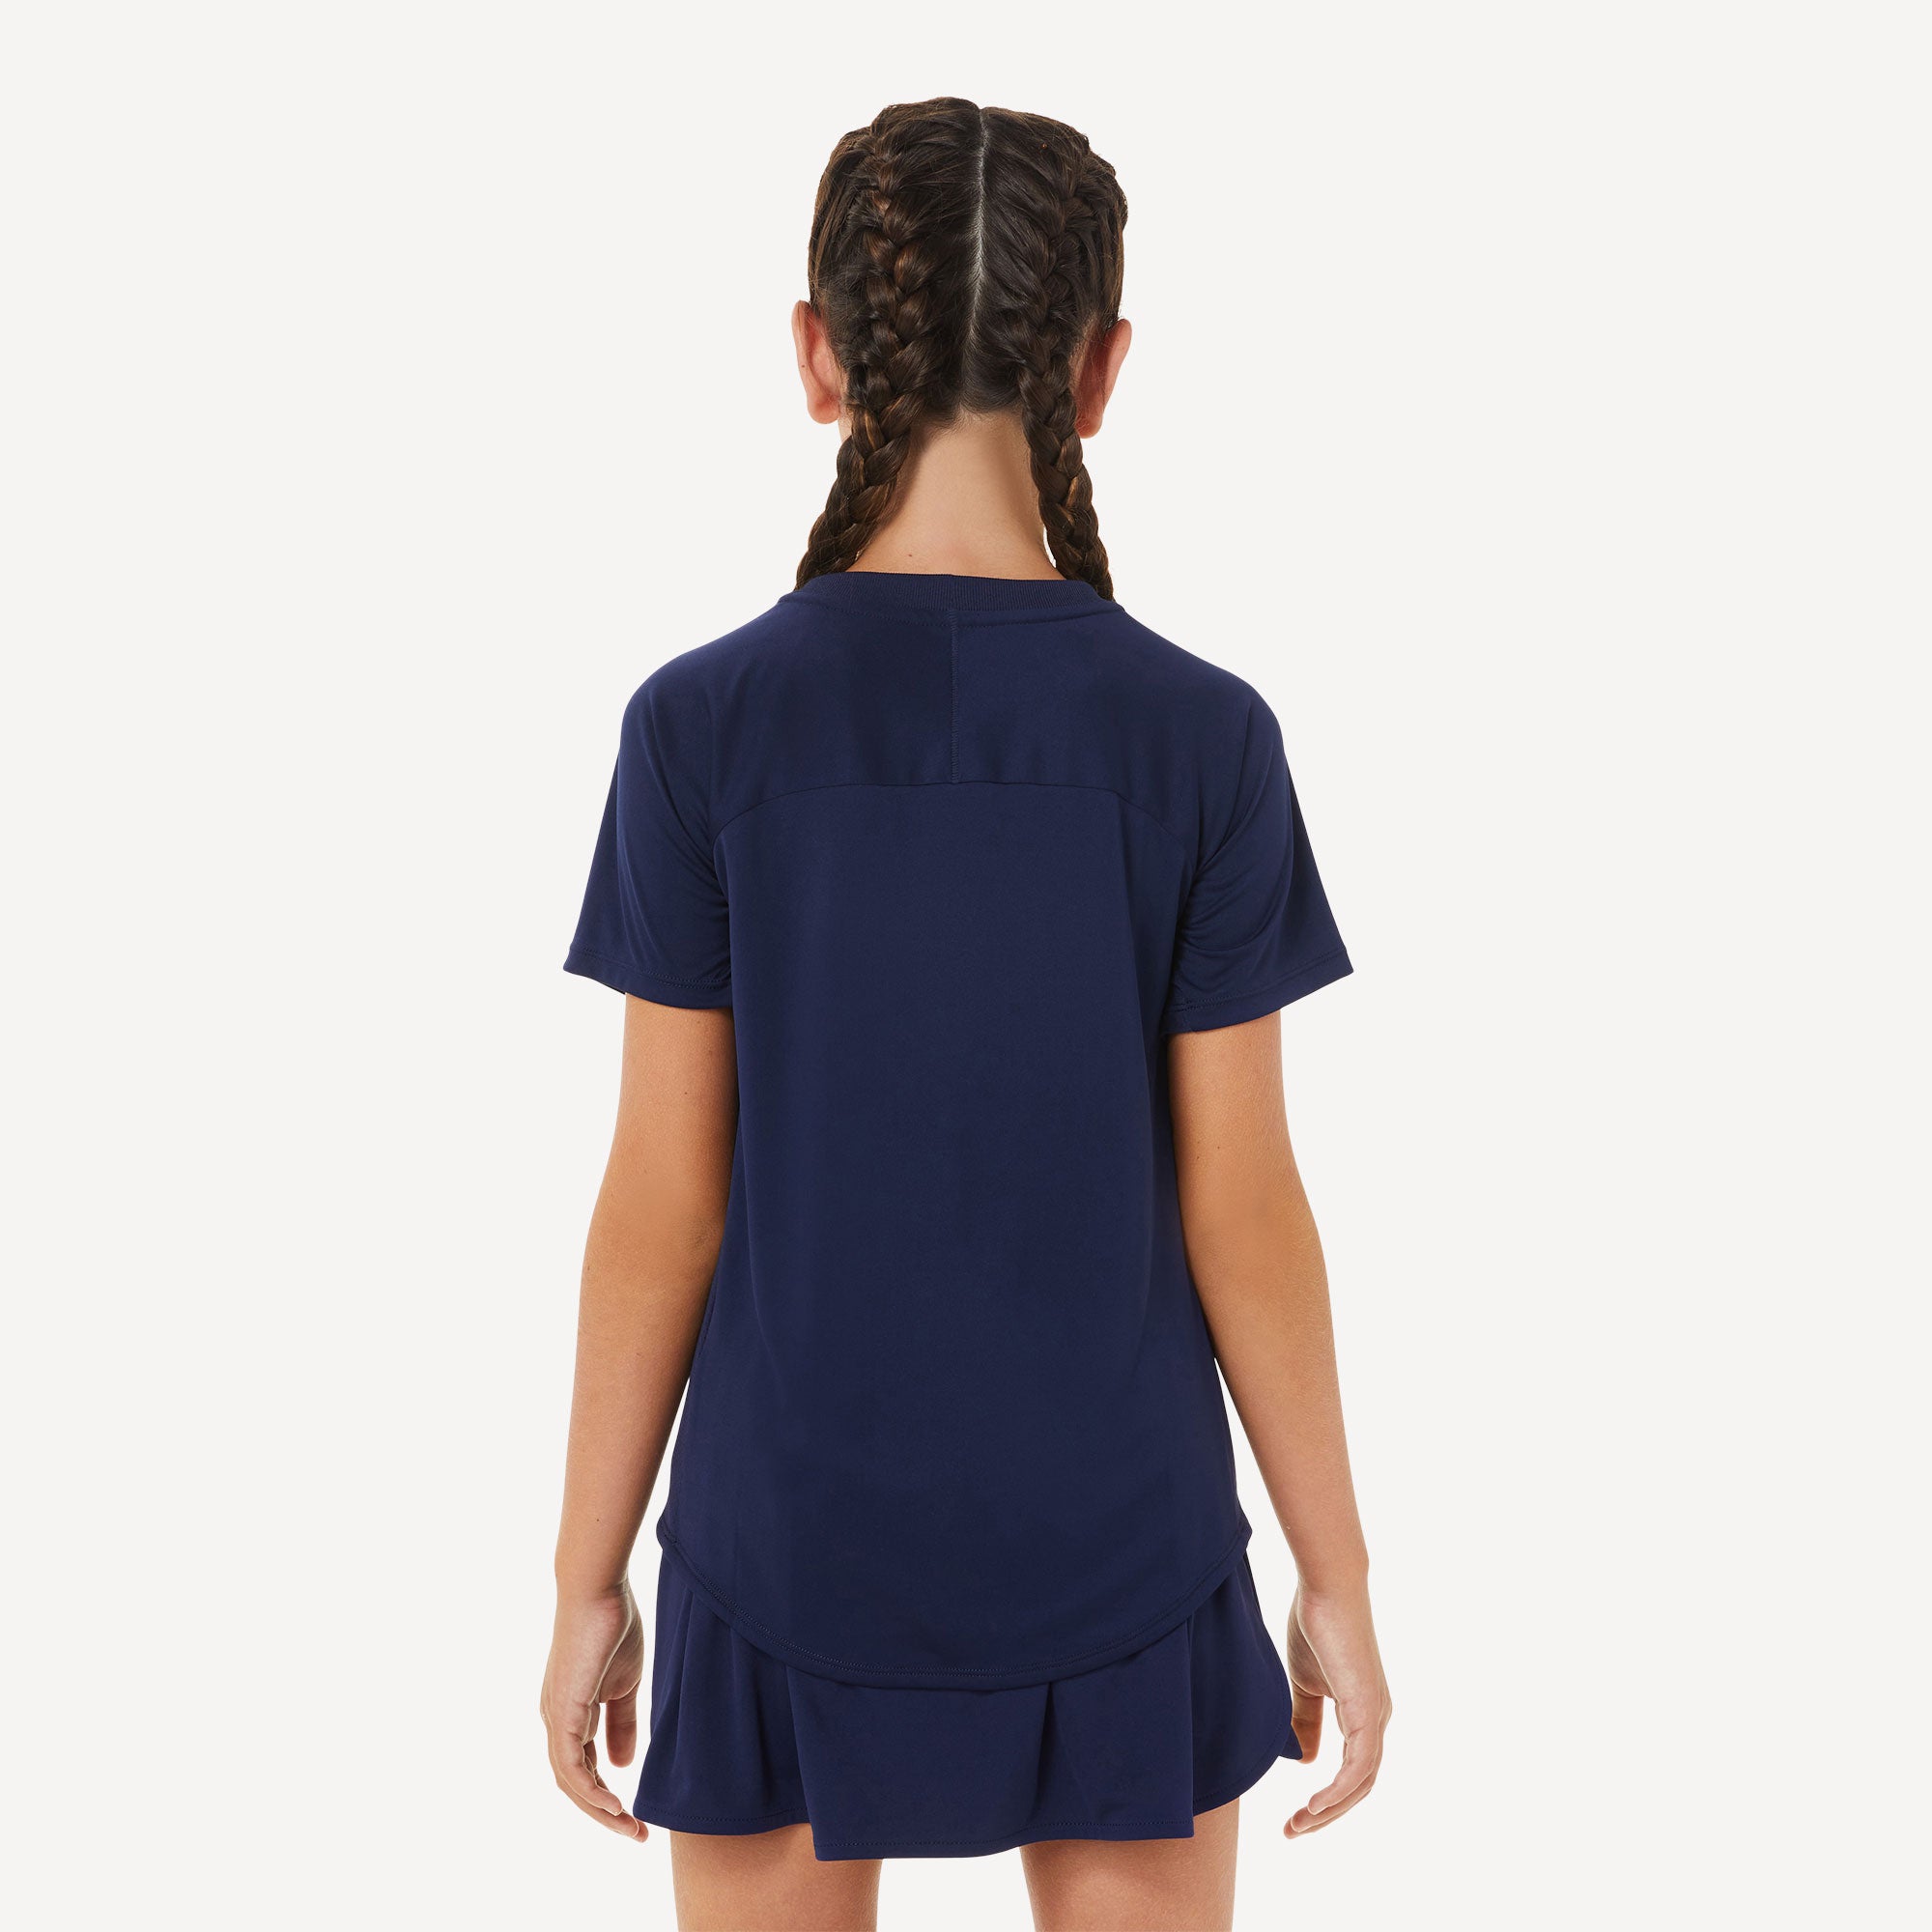 ASICS Girls' Tennis Shirt Blue (2)